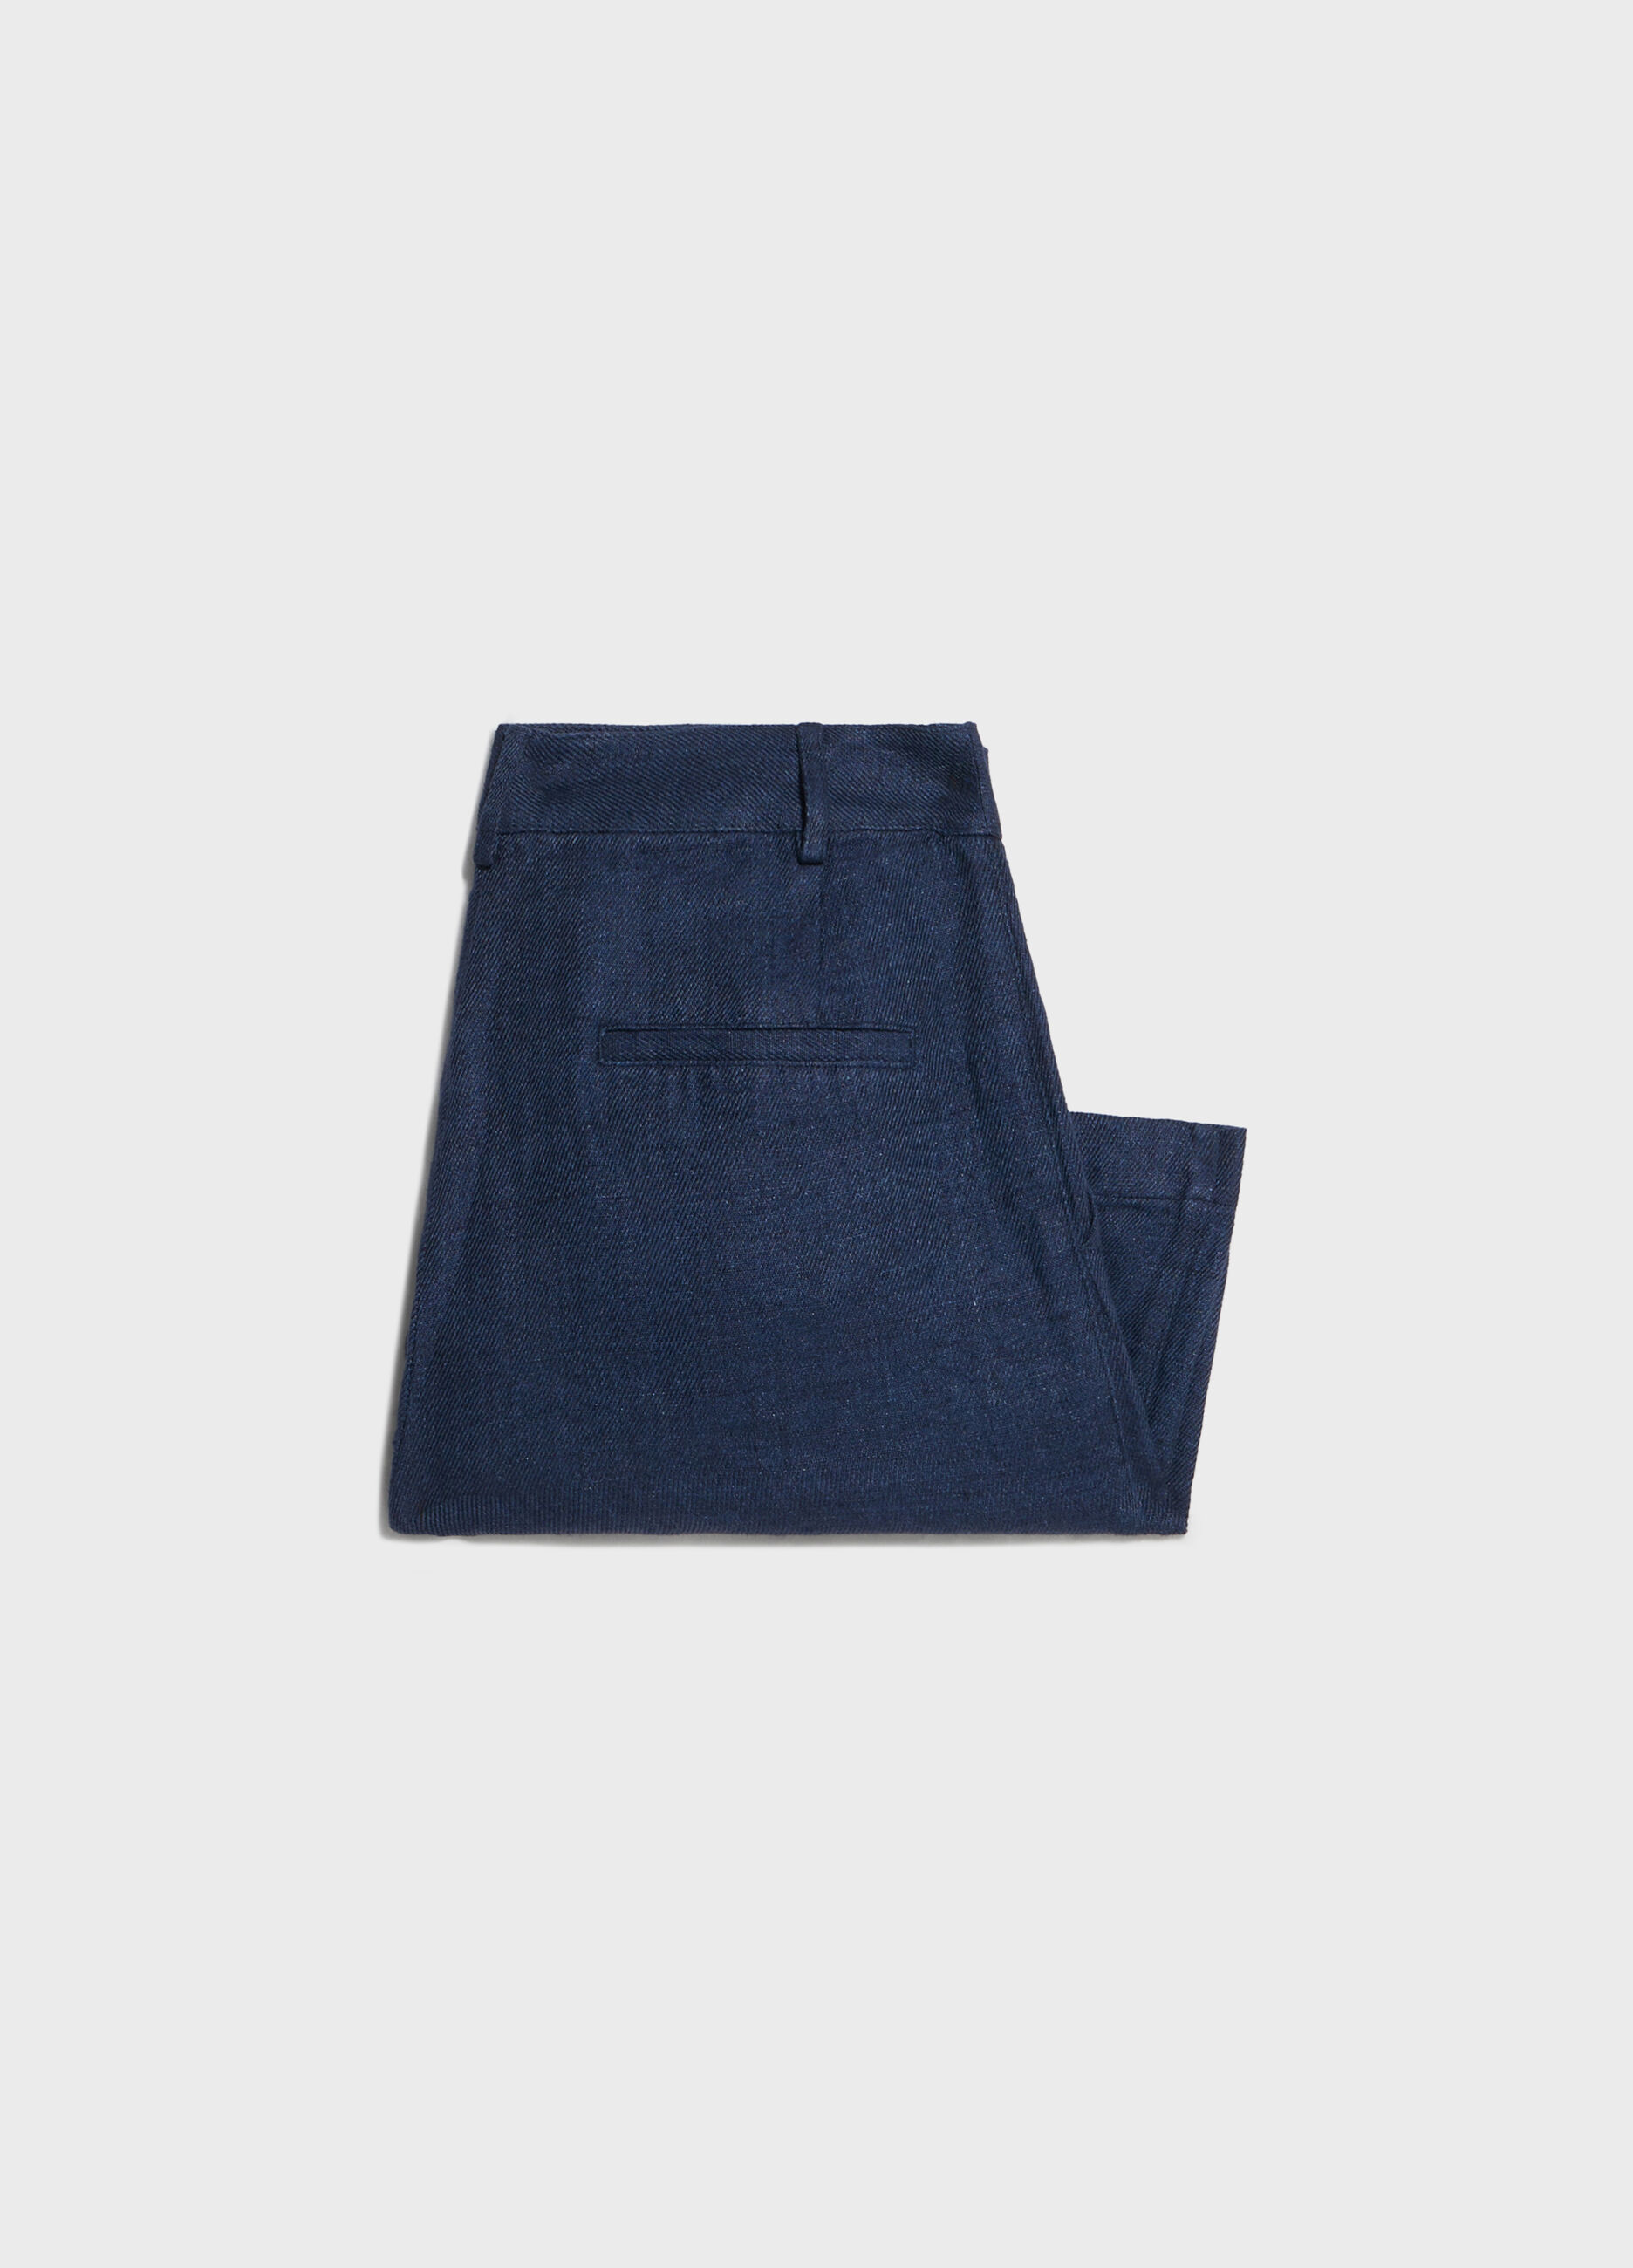 Short pants in denim-effect linen